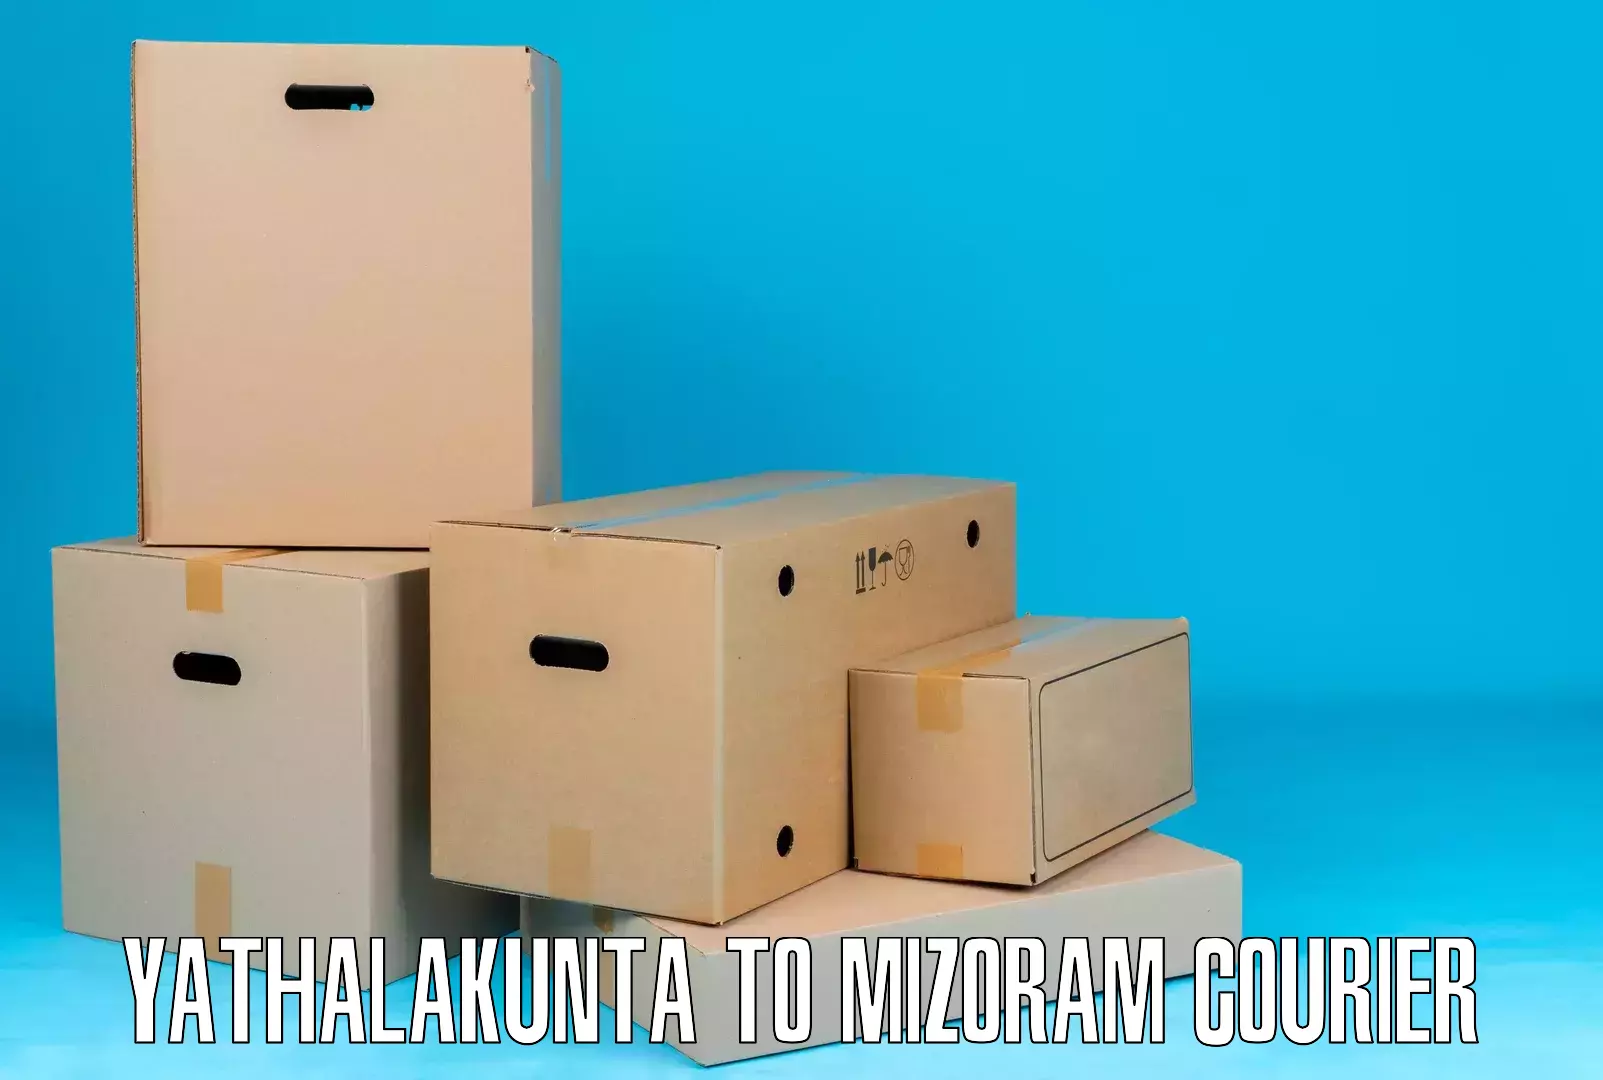 Cost-effective courier options Yathalakunta to Kolasib